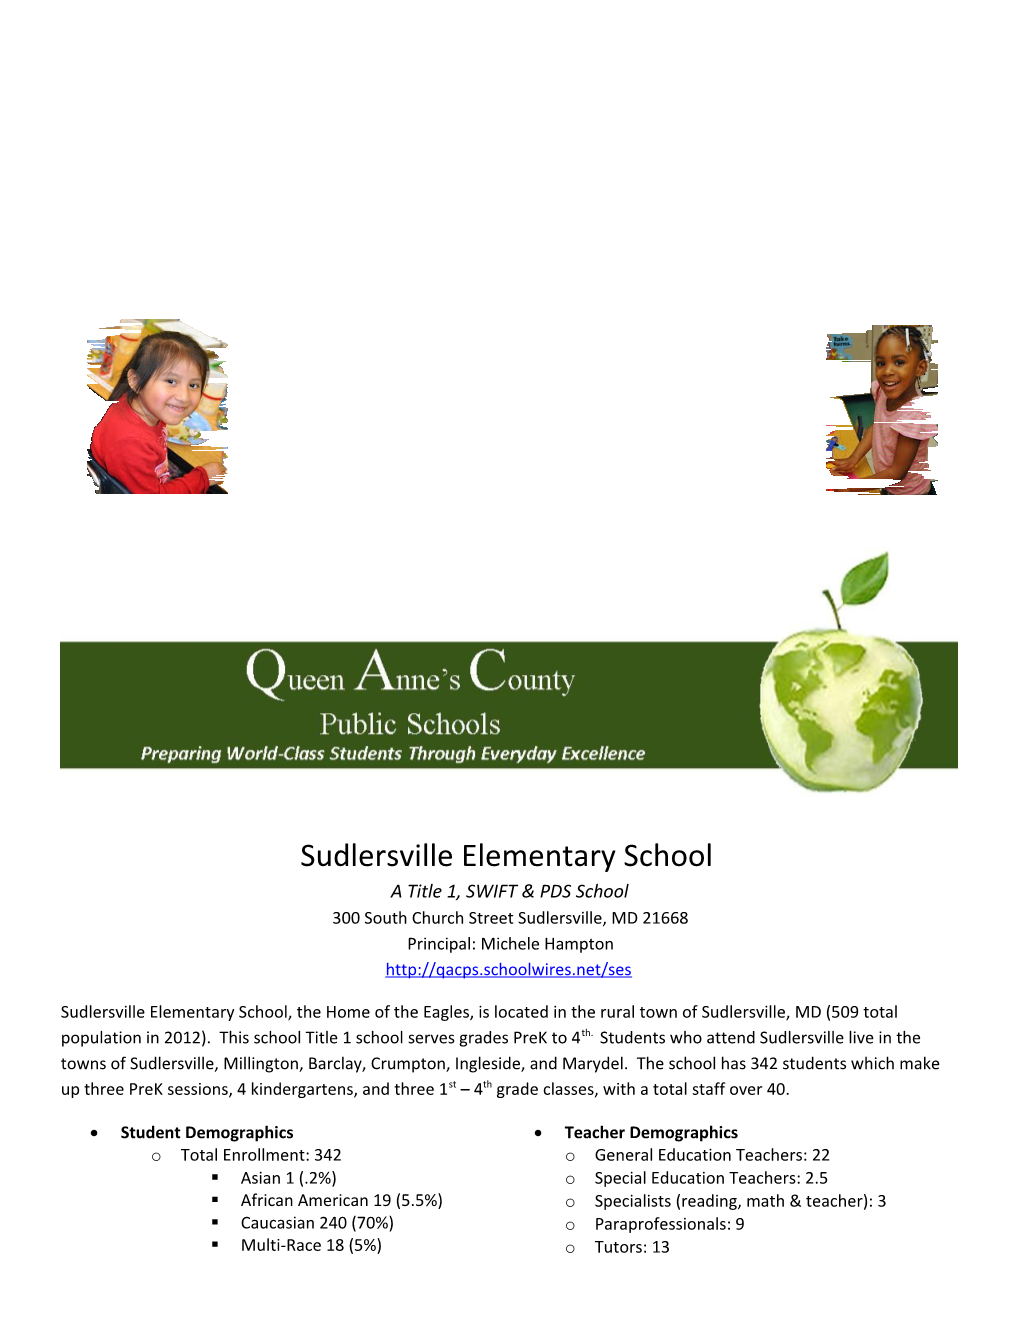 Sudlersville Elementary School a Title 1, SWIFT & PDS School 300 South Church Street